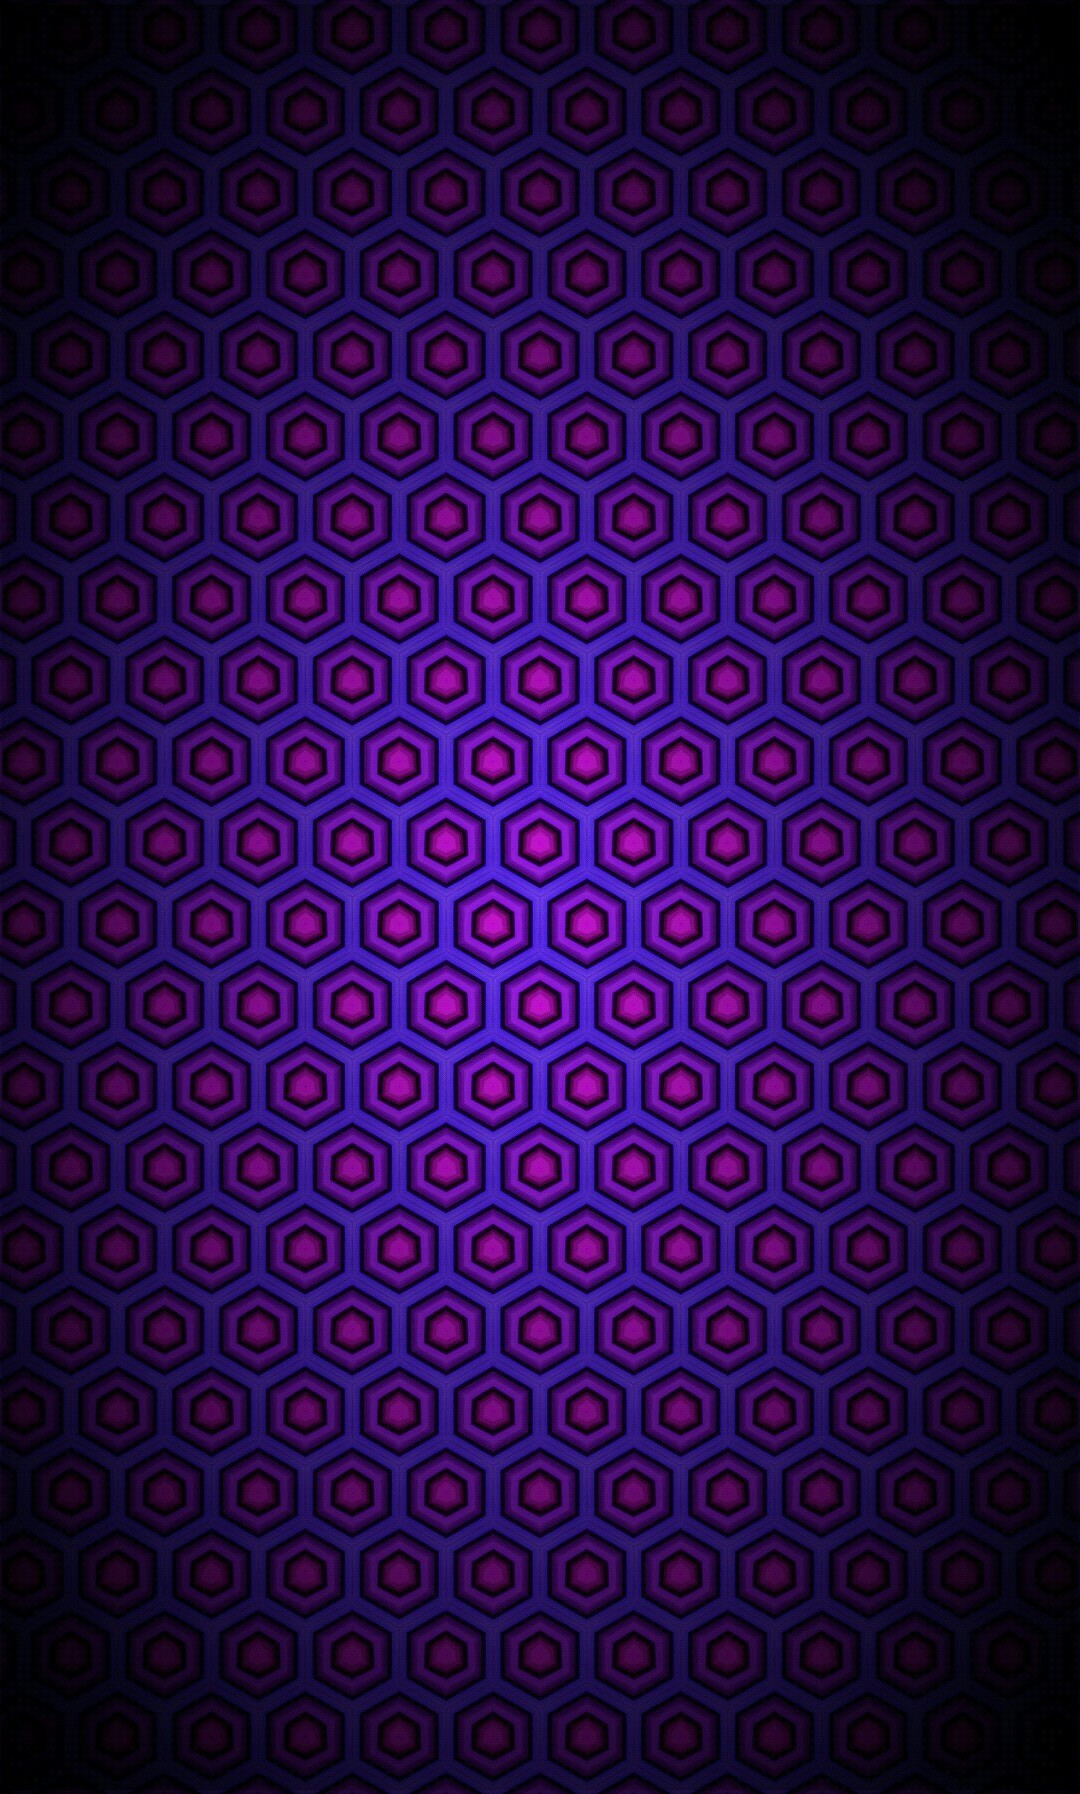 General 1080x1794 digital art portrait display CGI geometry hexagon minimalism pattern purple